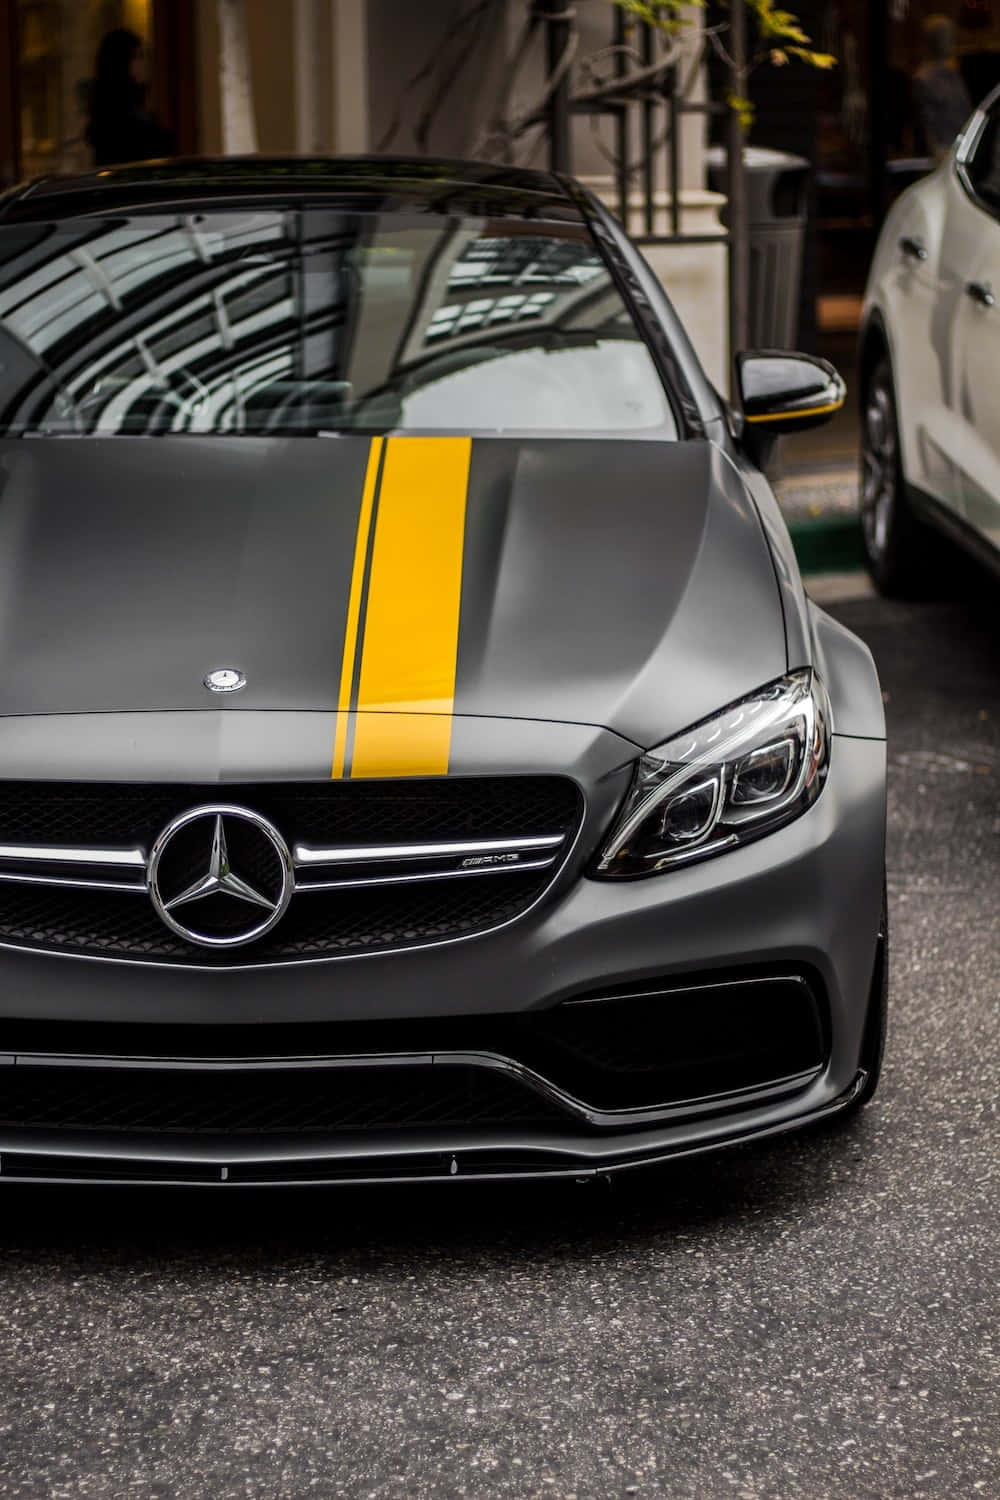 Mejorfondo De Pantalla Mercedes Con Un Tono Gris Oscuro Y Una Franja Amarilla En El Mercedes-benz Clase A.